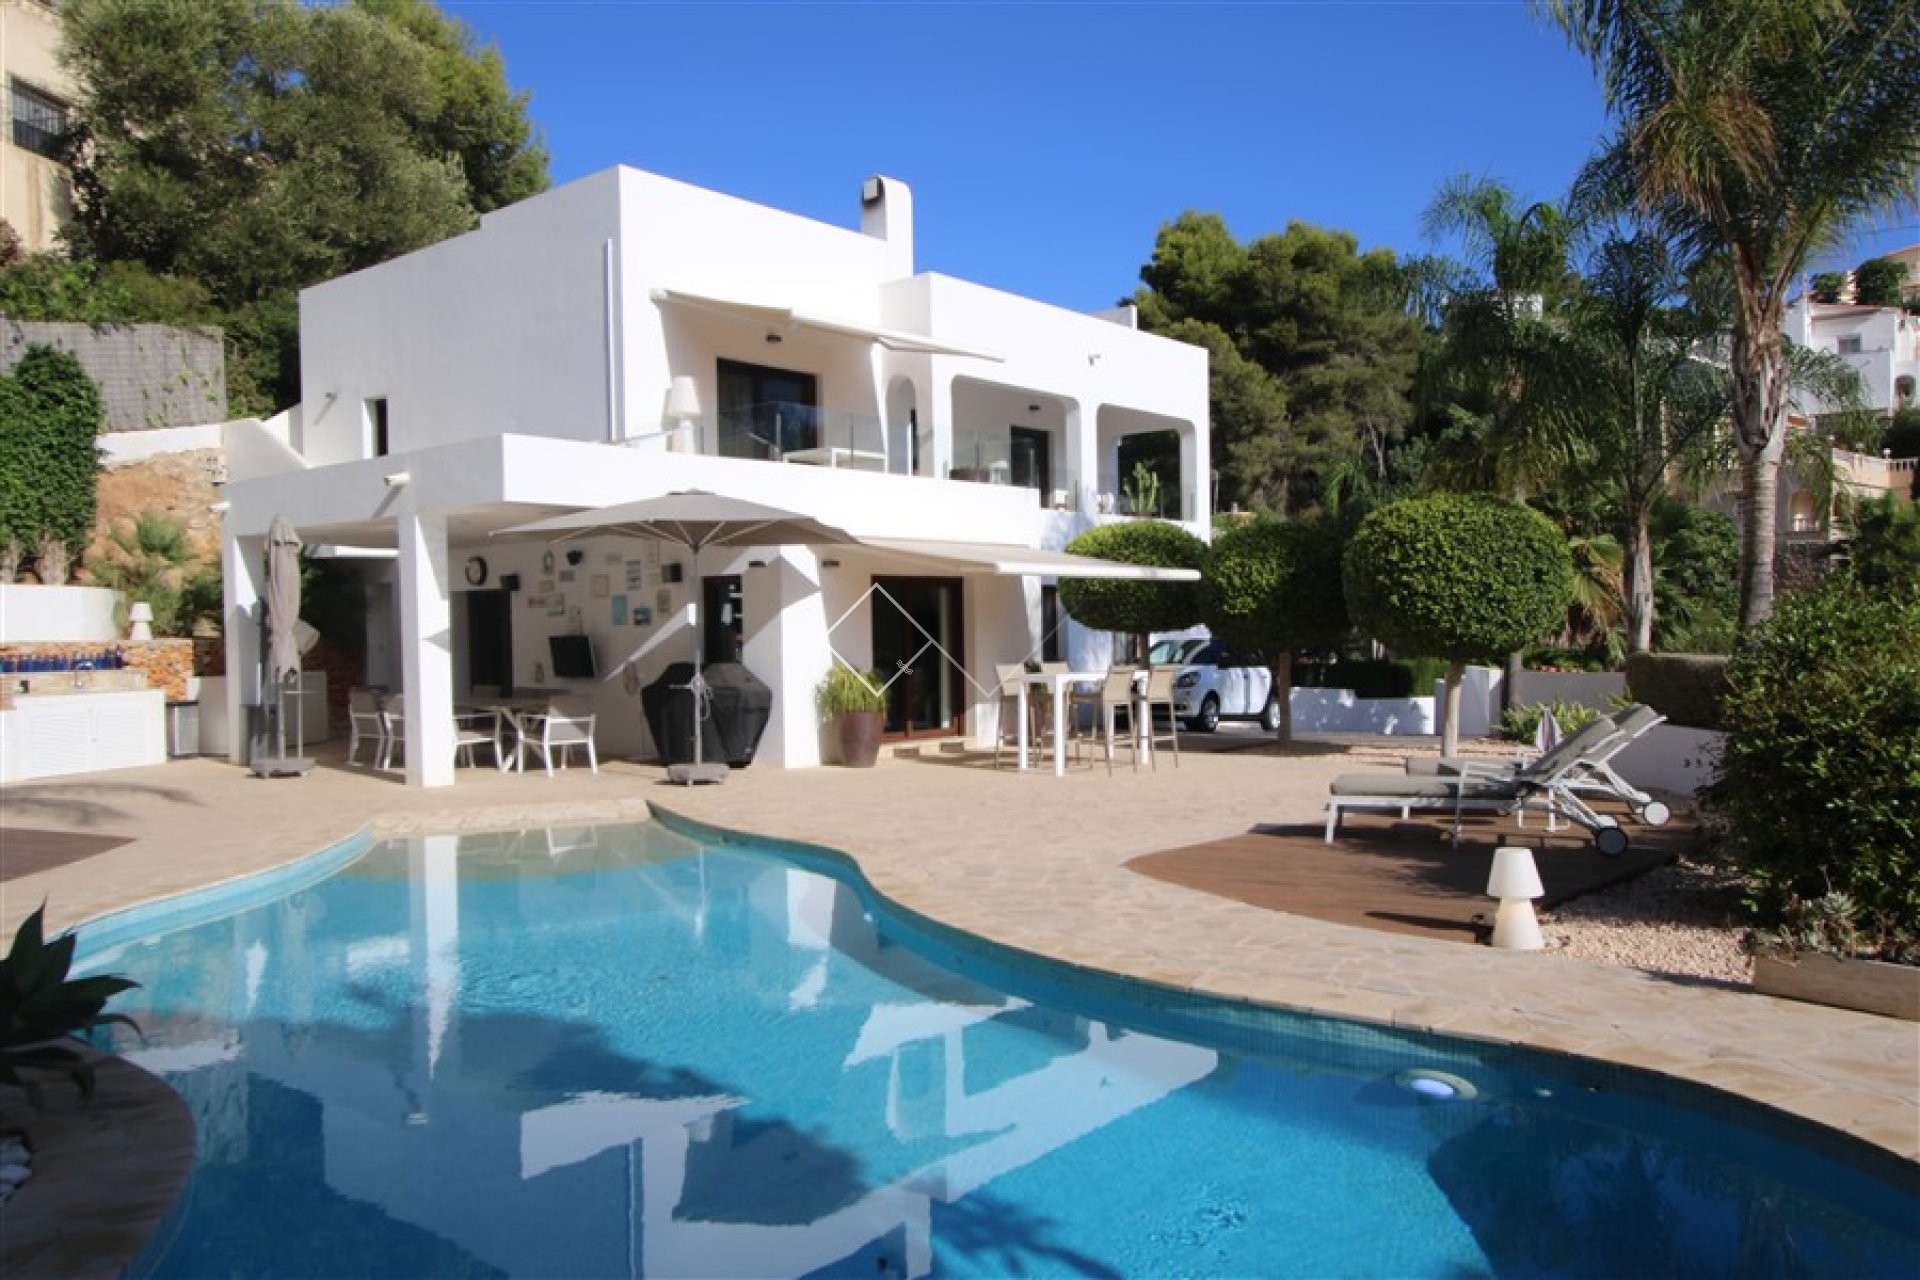 Villa Ibiza à vendre à Benissa avec piscine chauffée